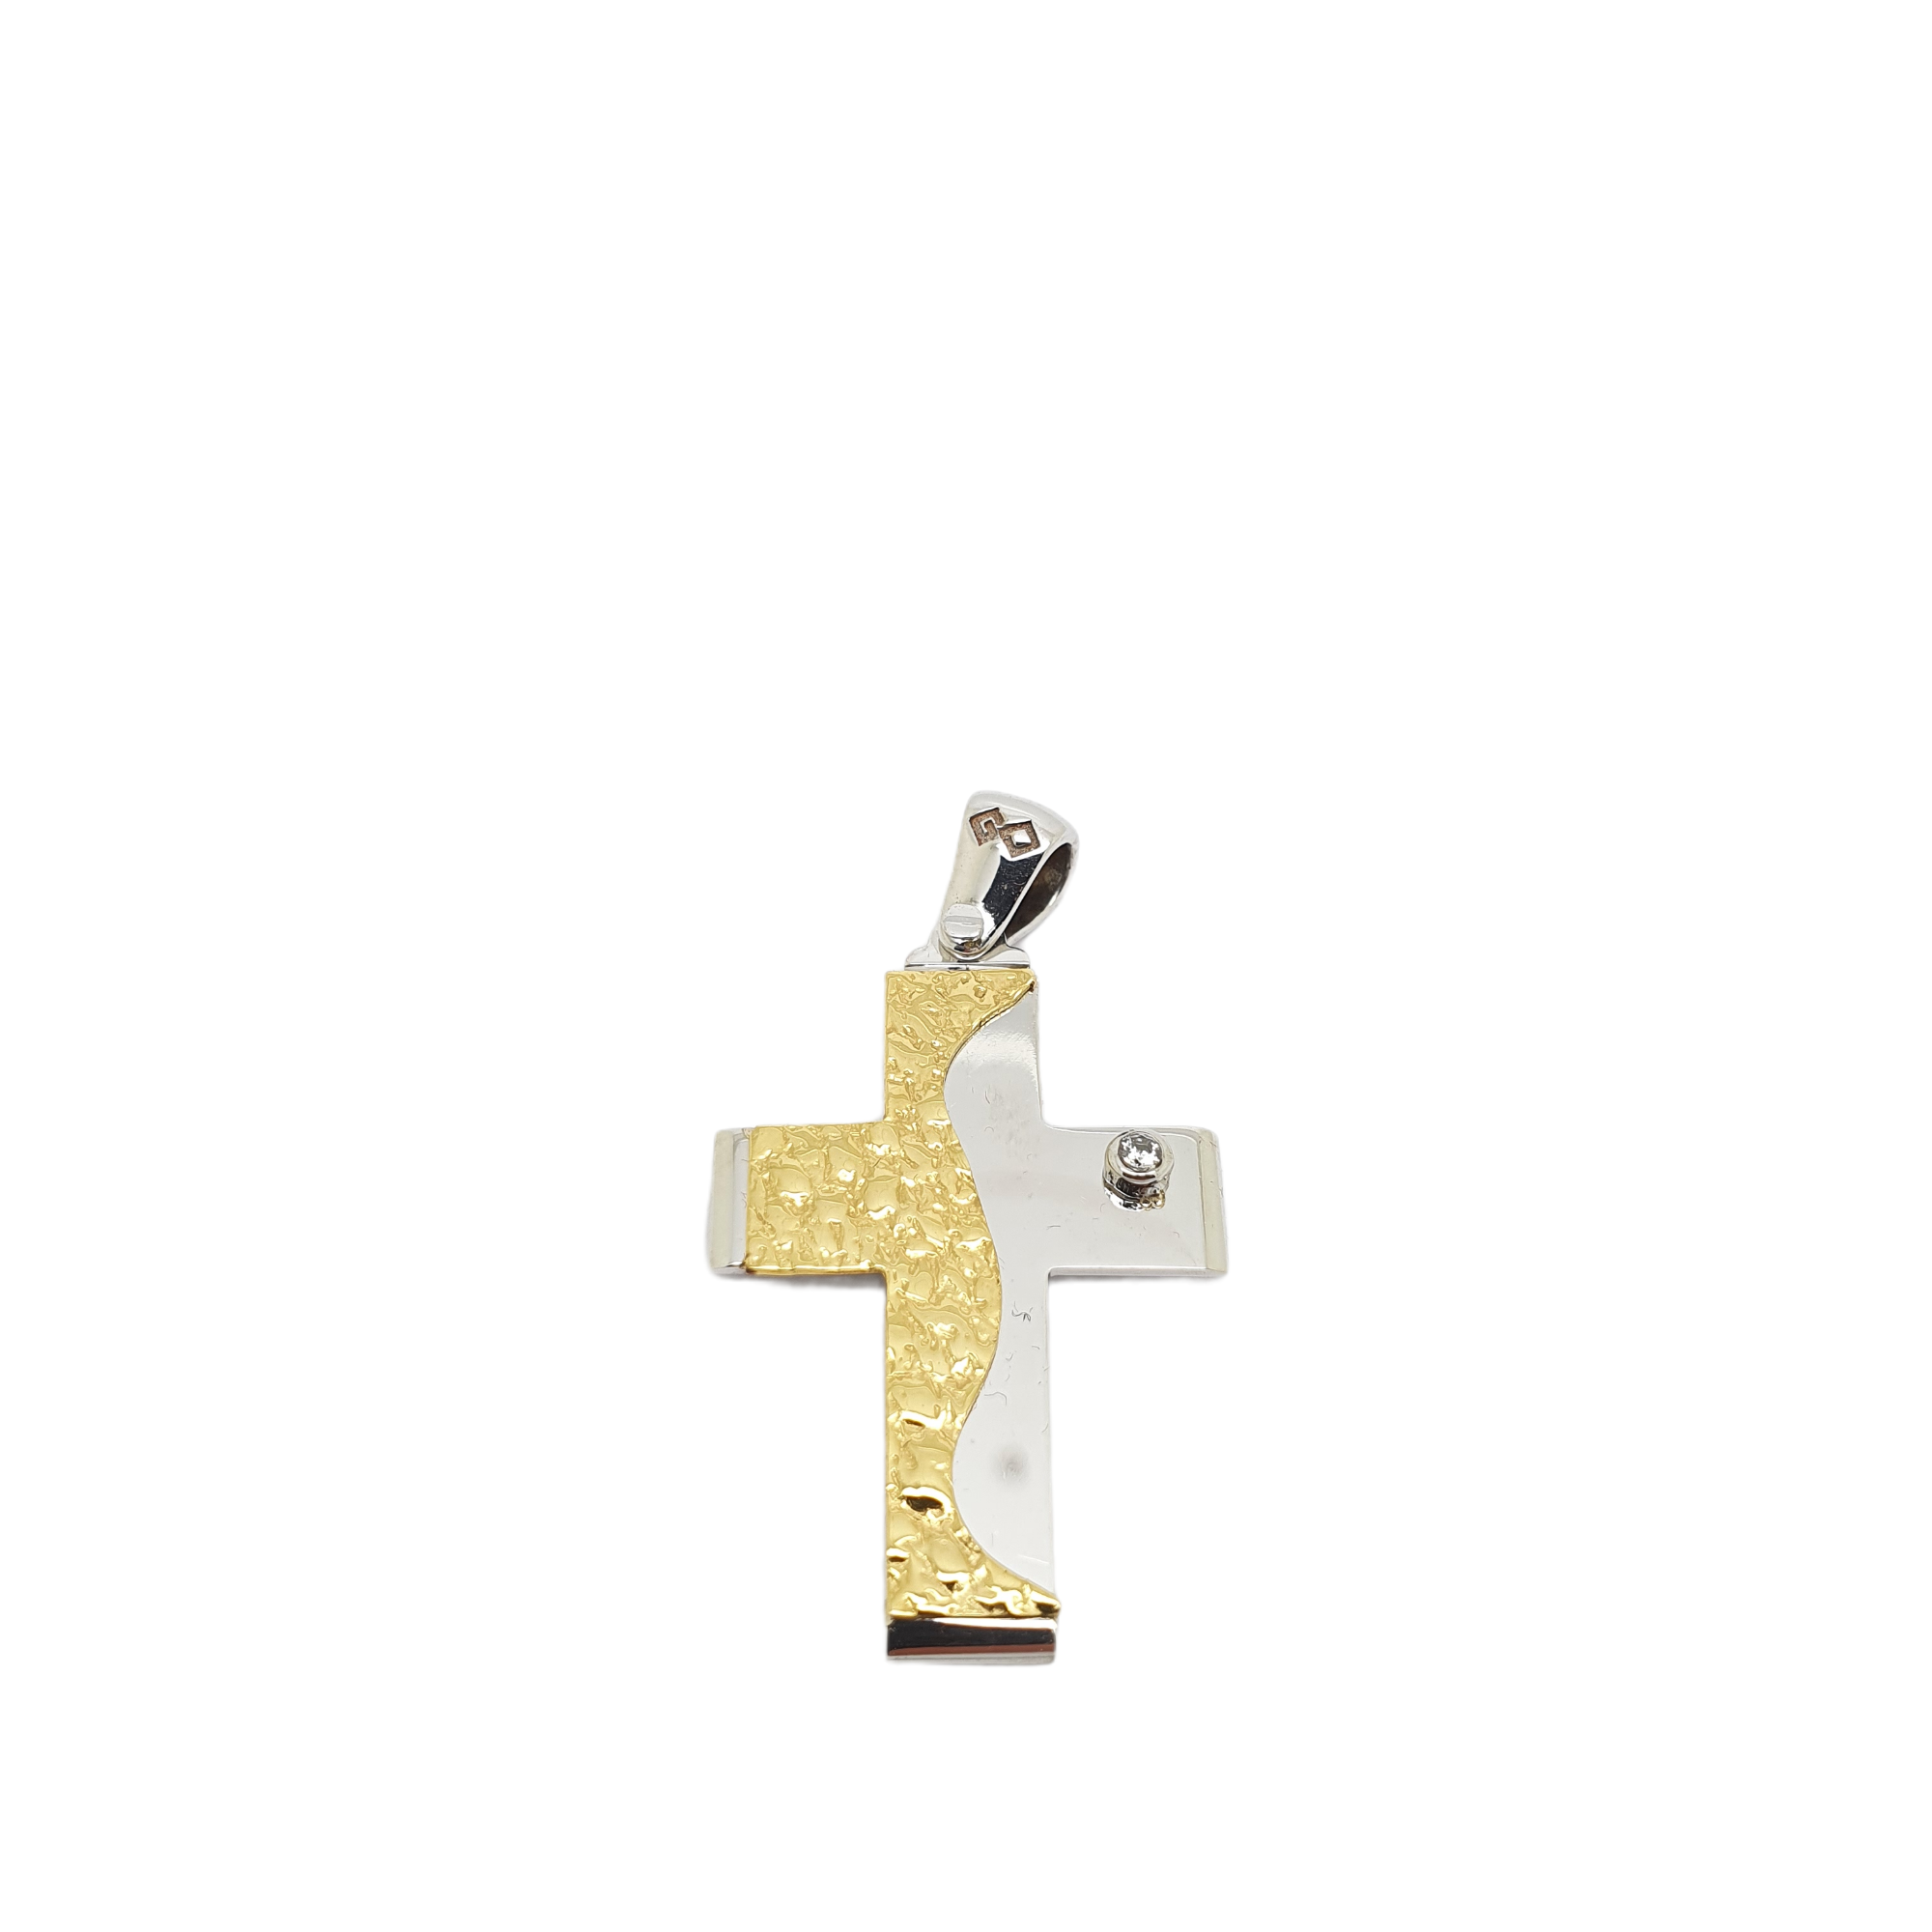 Σταυρός απο  λευκόχρυσο κ14 με ζιργκόν σε καστόνι και χρυσή λεπτομέρια (code 1856)